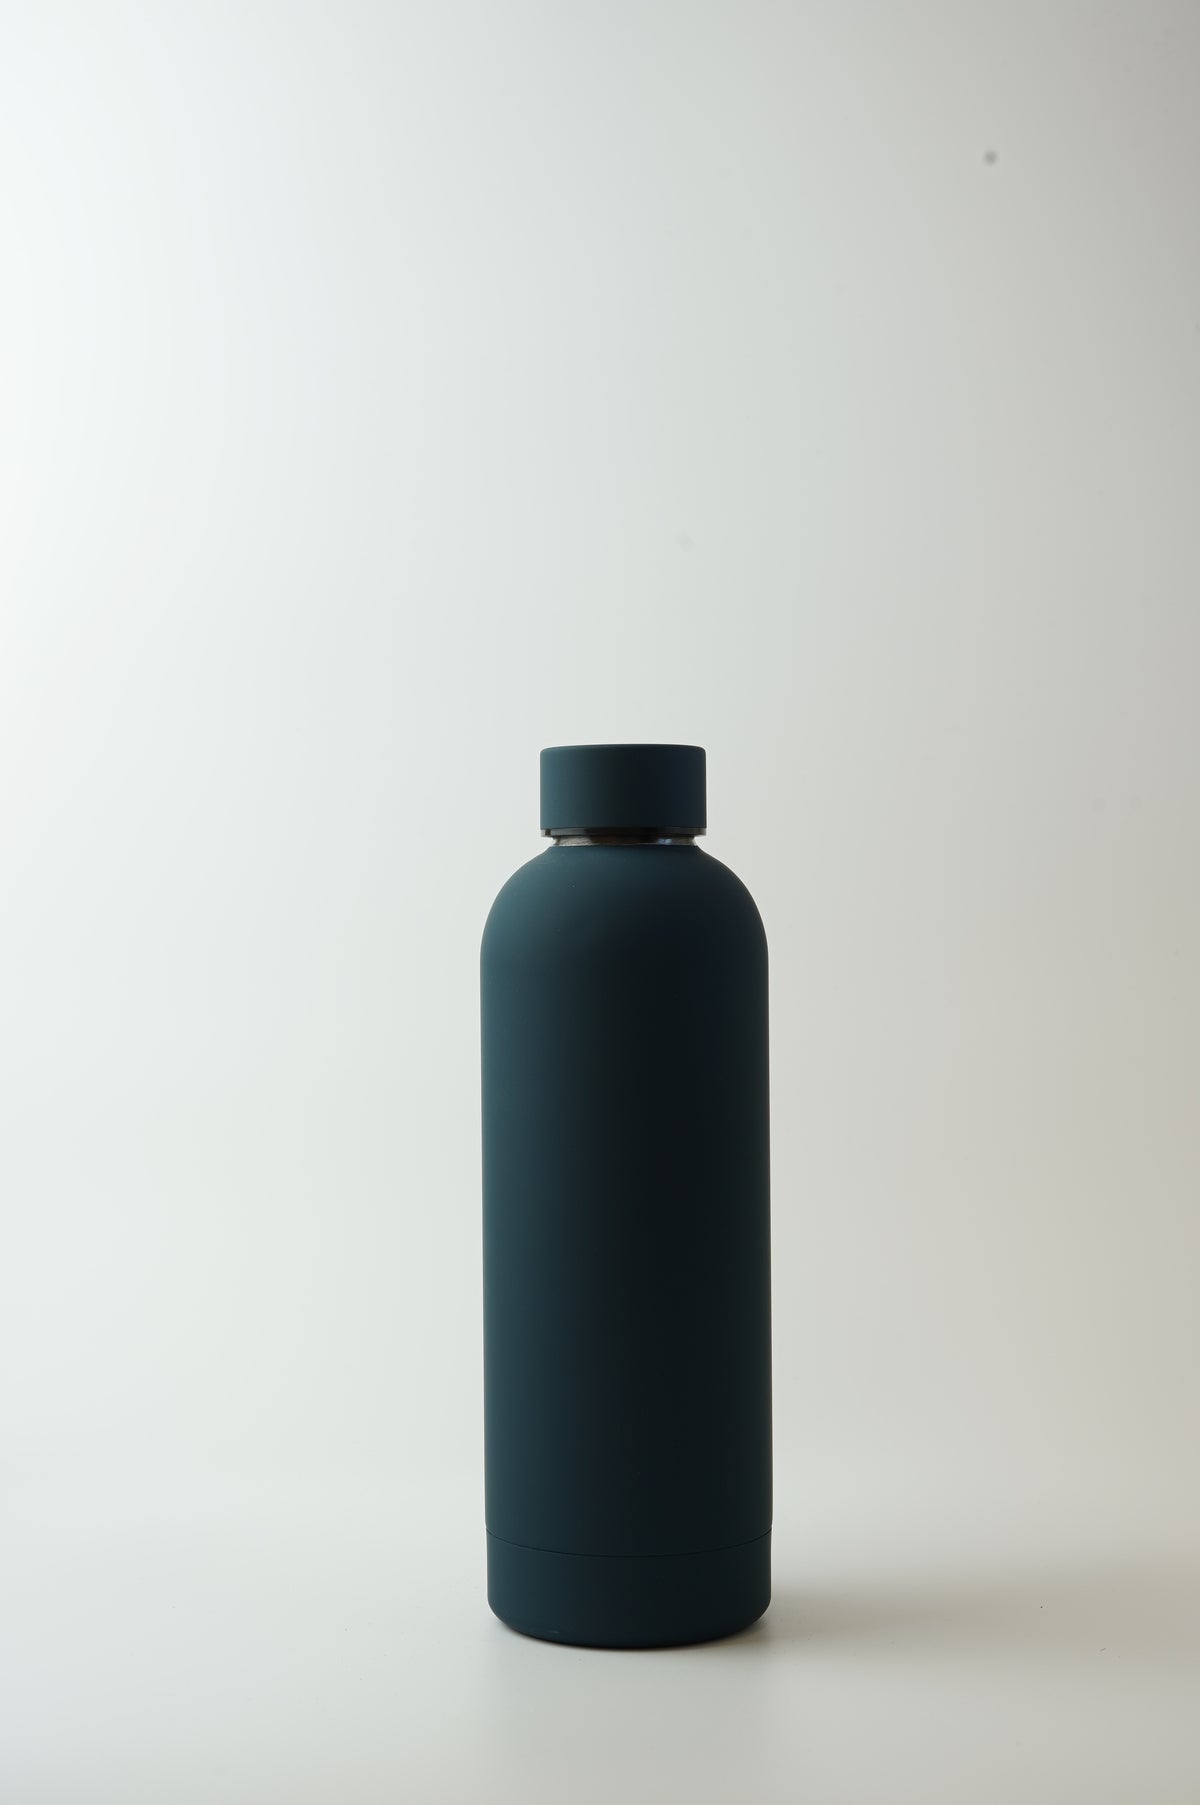 Elevate Water Bottle